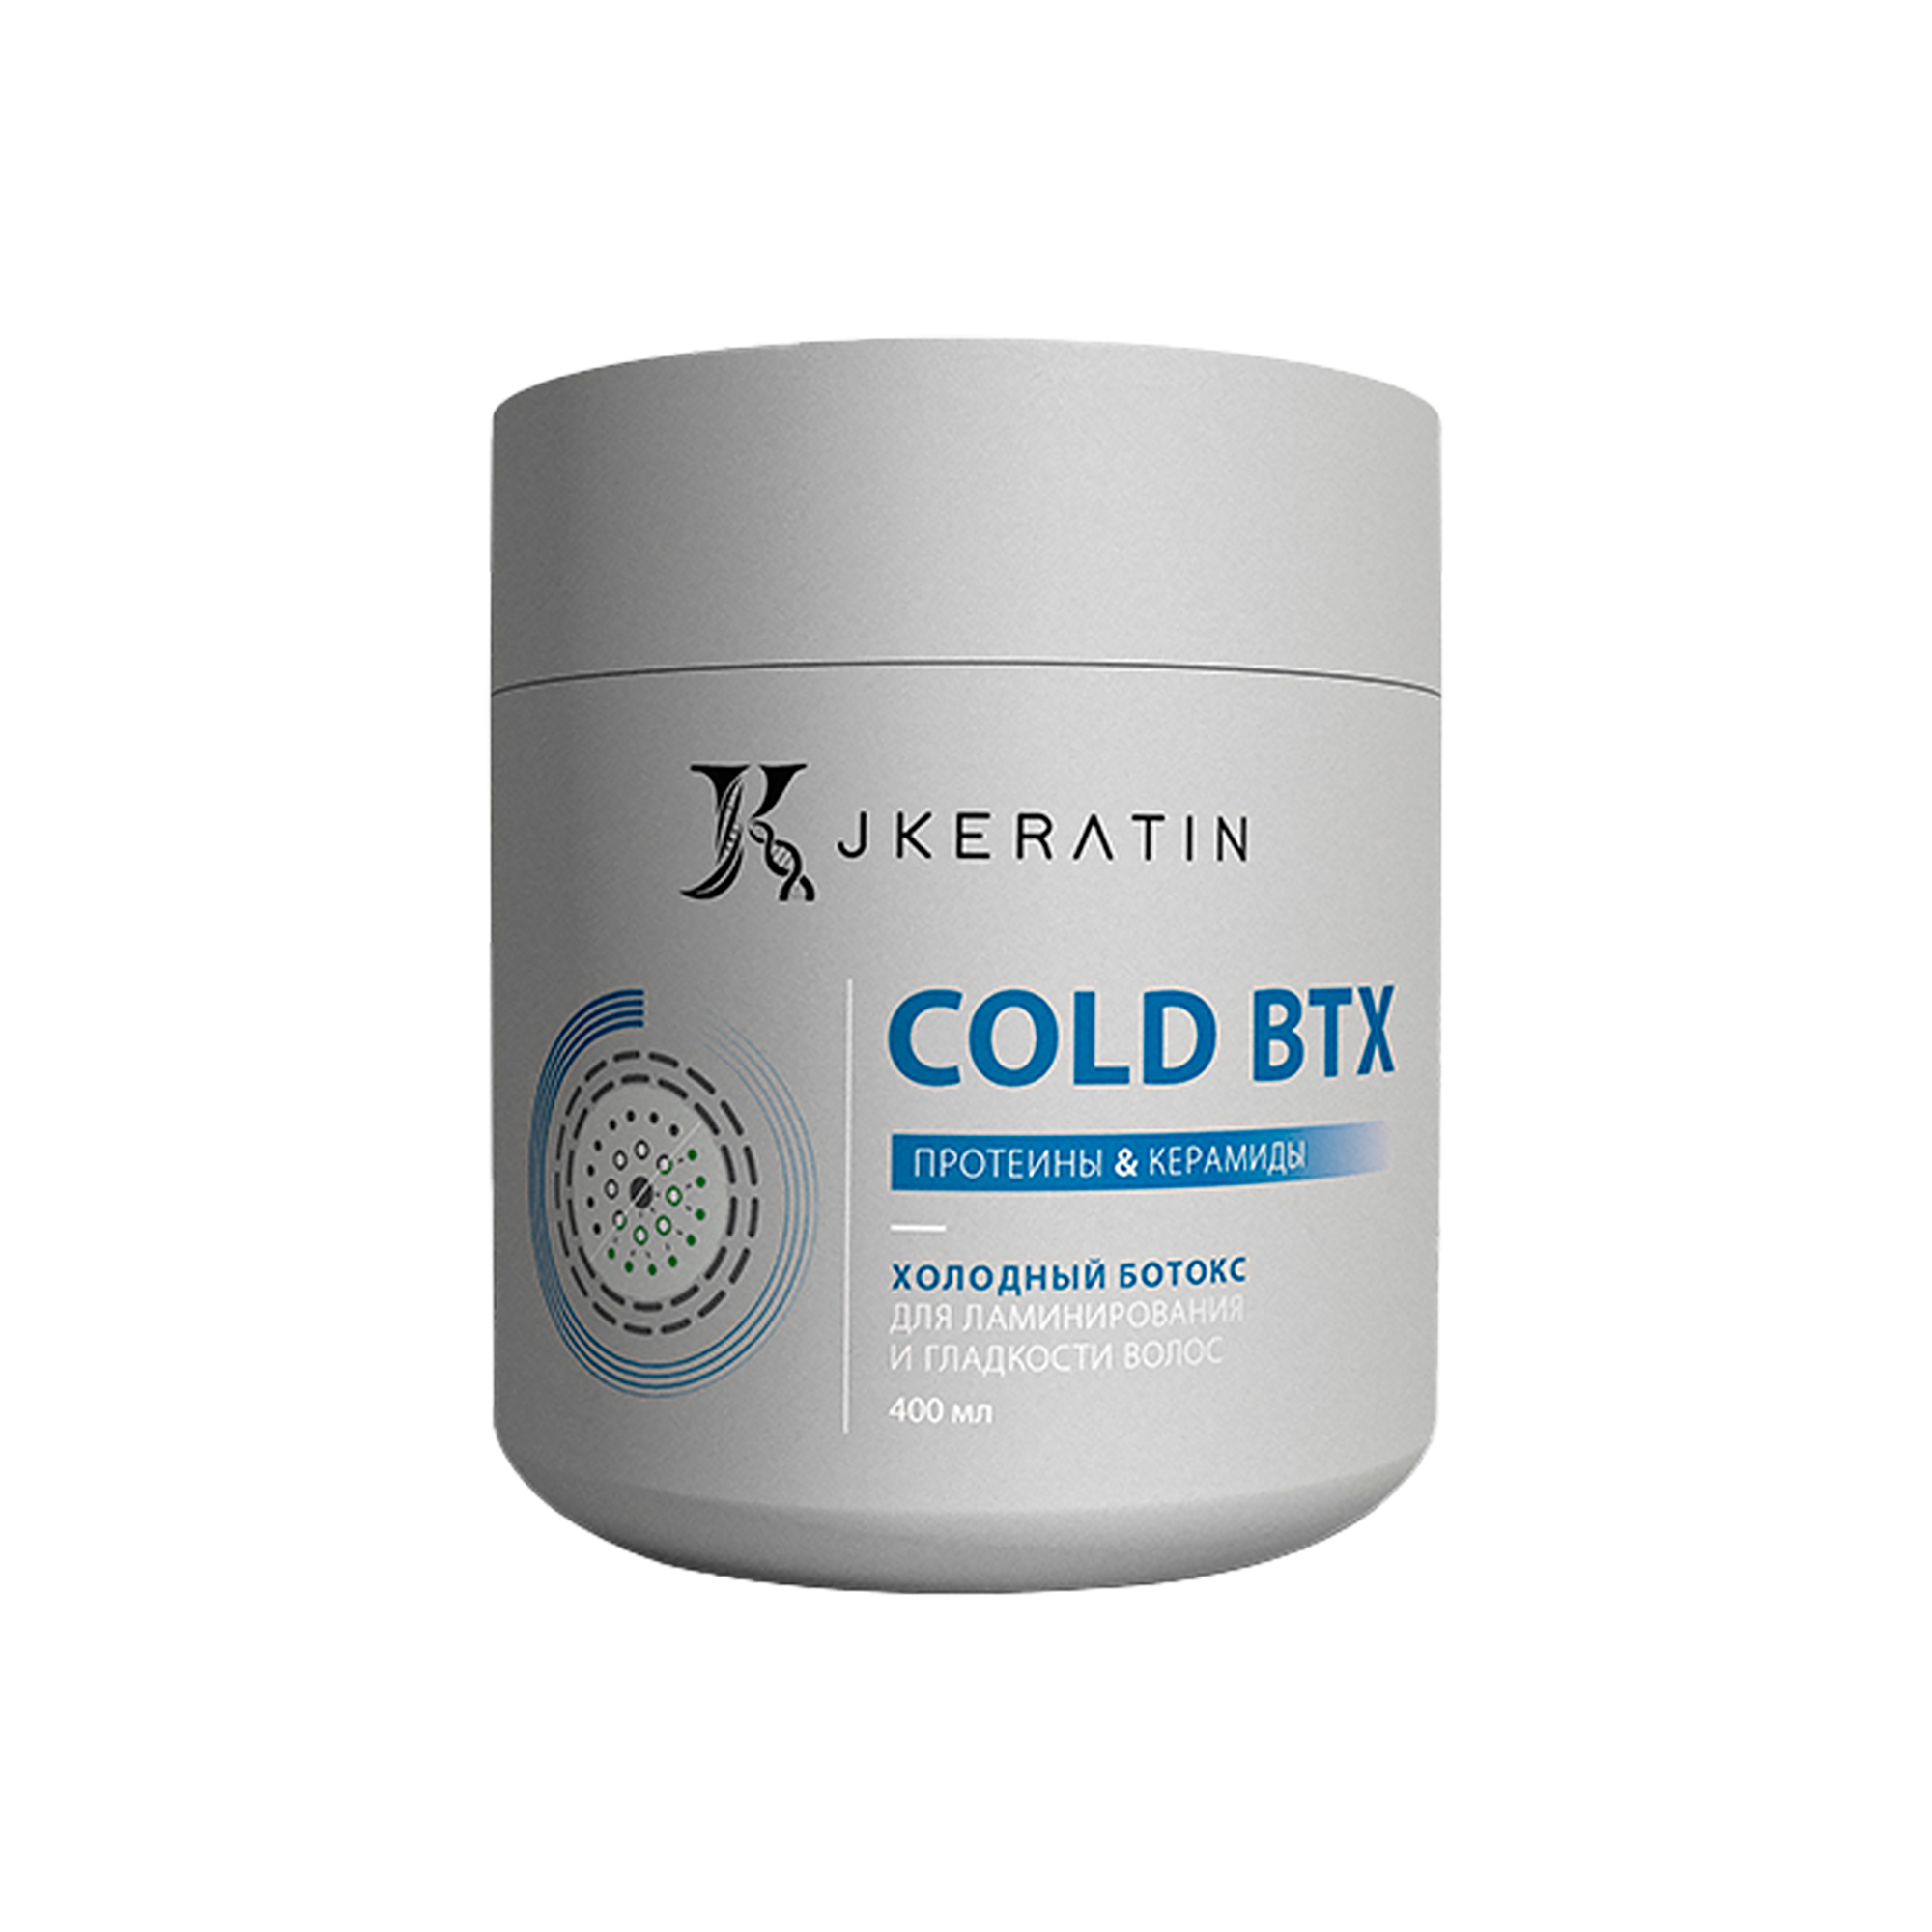 Холодный ботокс JKeratin Cold BTX для ламинирования и гладкости волос, 400 мл никотиновая кислота р р д наруж прим д волос 5мл 10